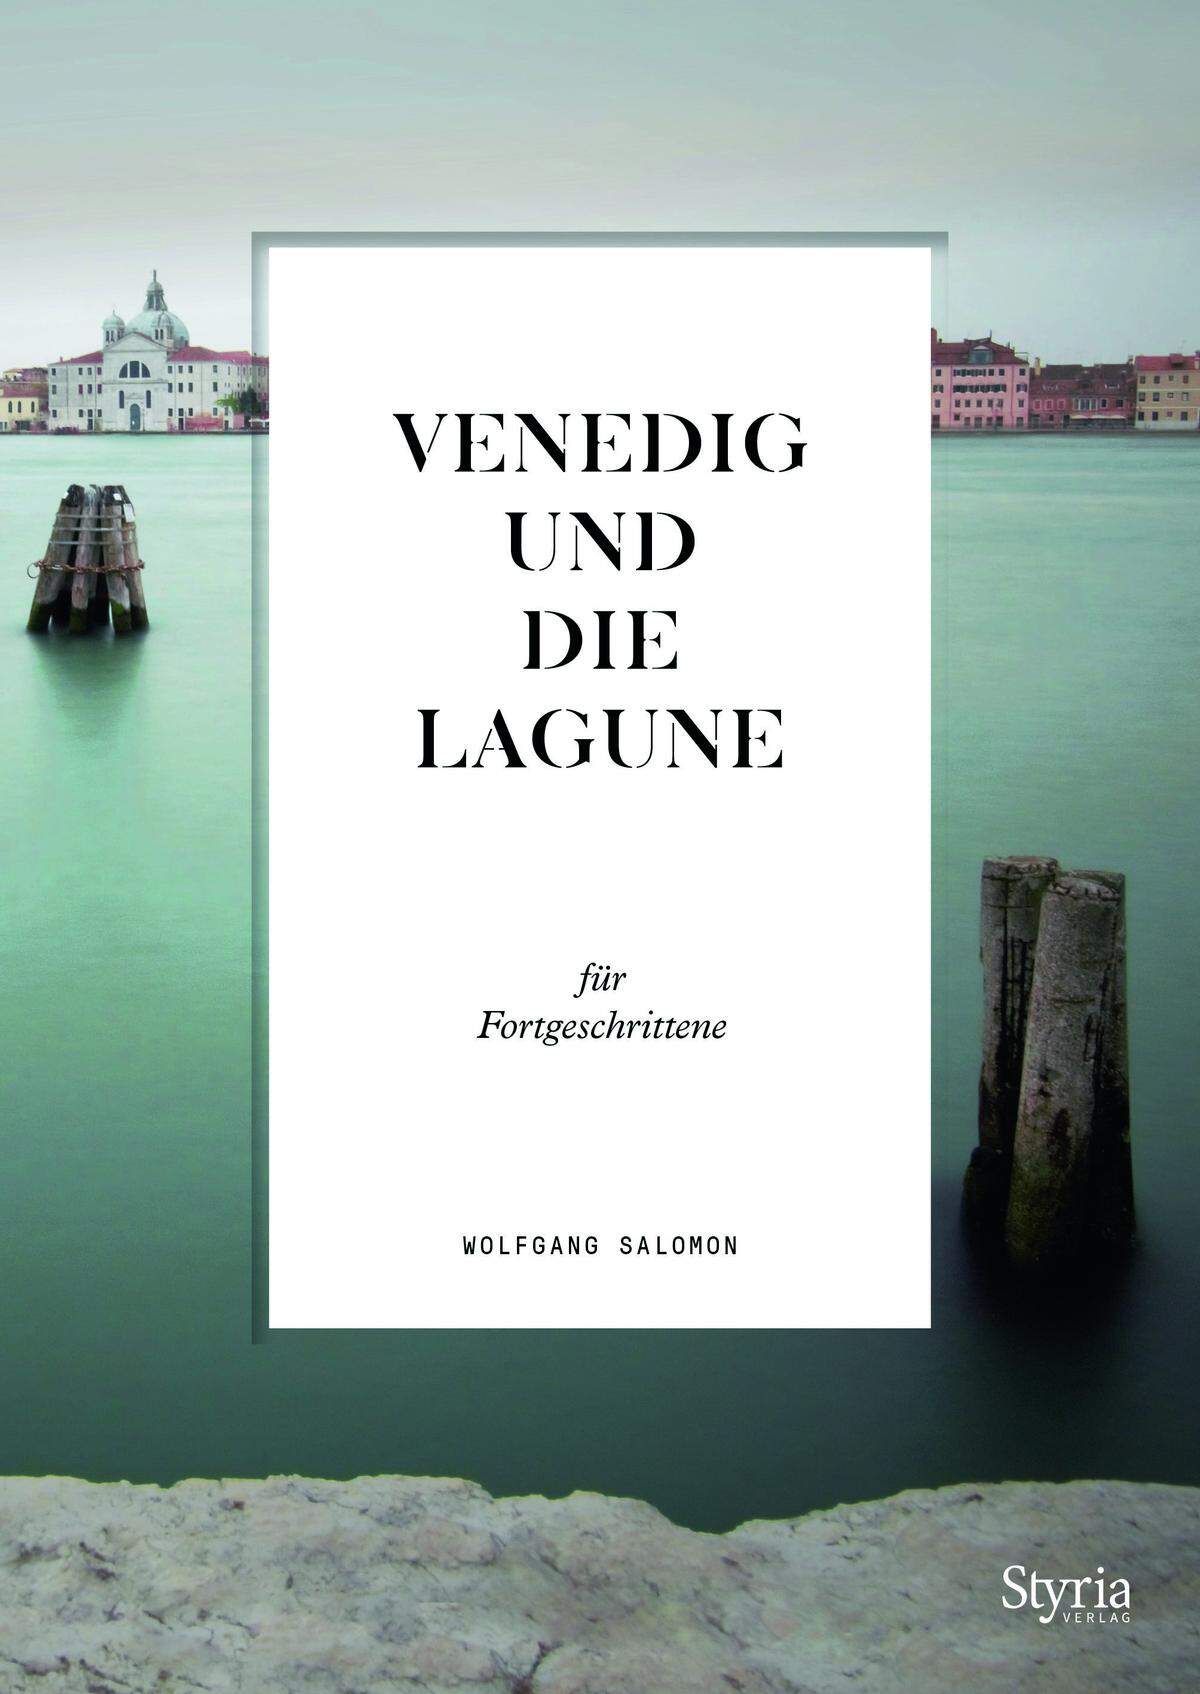 Das Buch "Venedig und die Lagune" von Wolfgang Salomon ist im Styria Verlag erschienen und online sowie im Handel erhältlich.